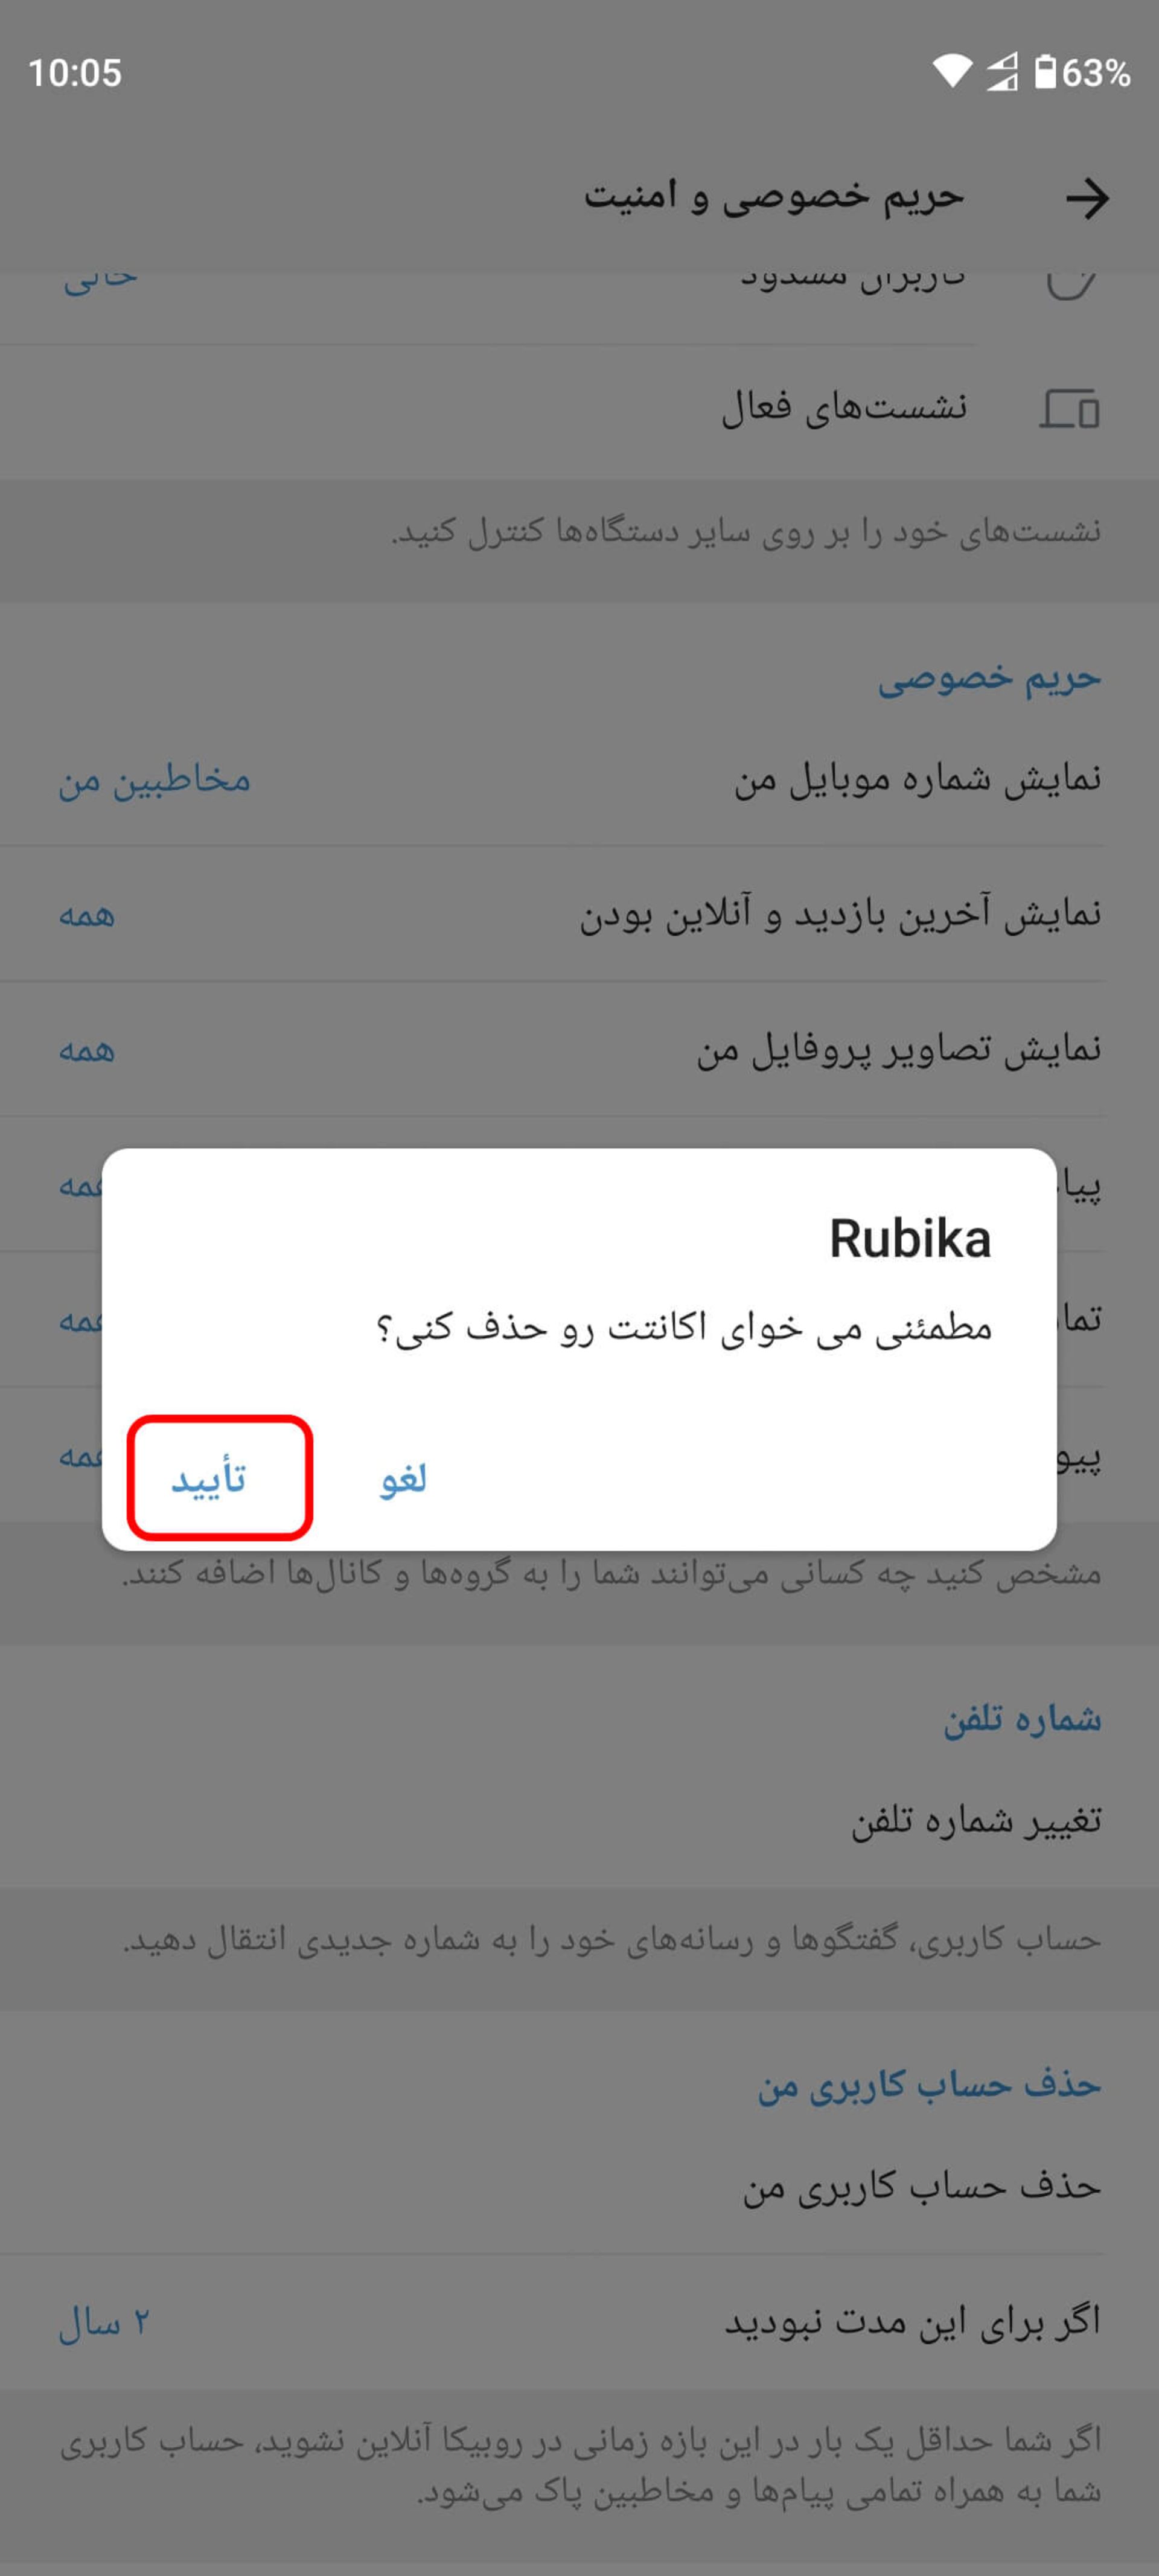 نمایش پیام جهت تایید حذف حساب کاربری روبیکا